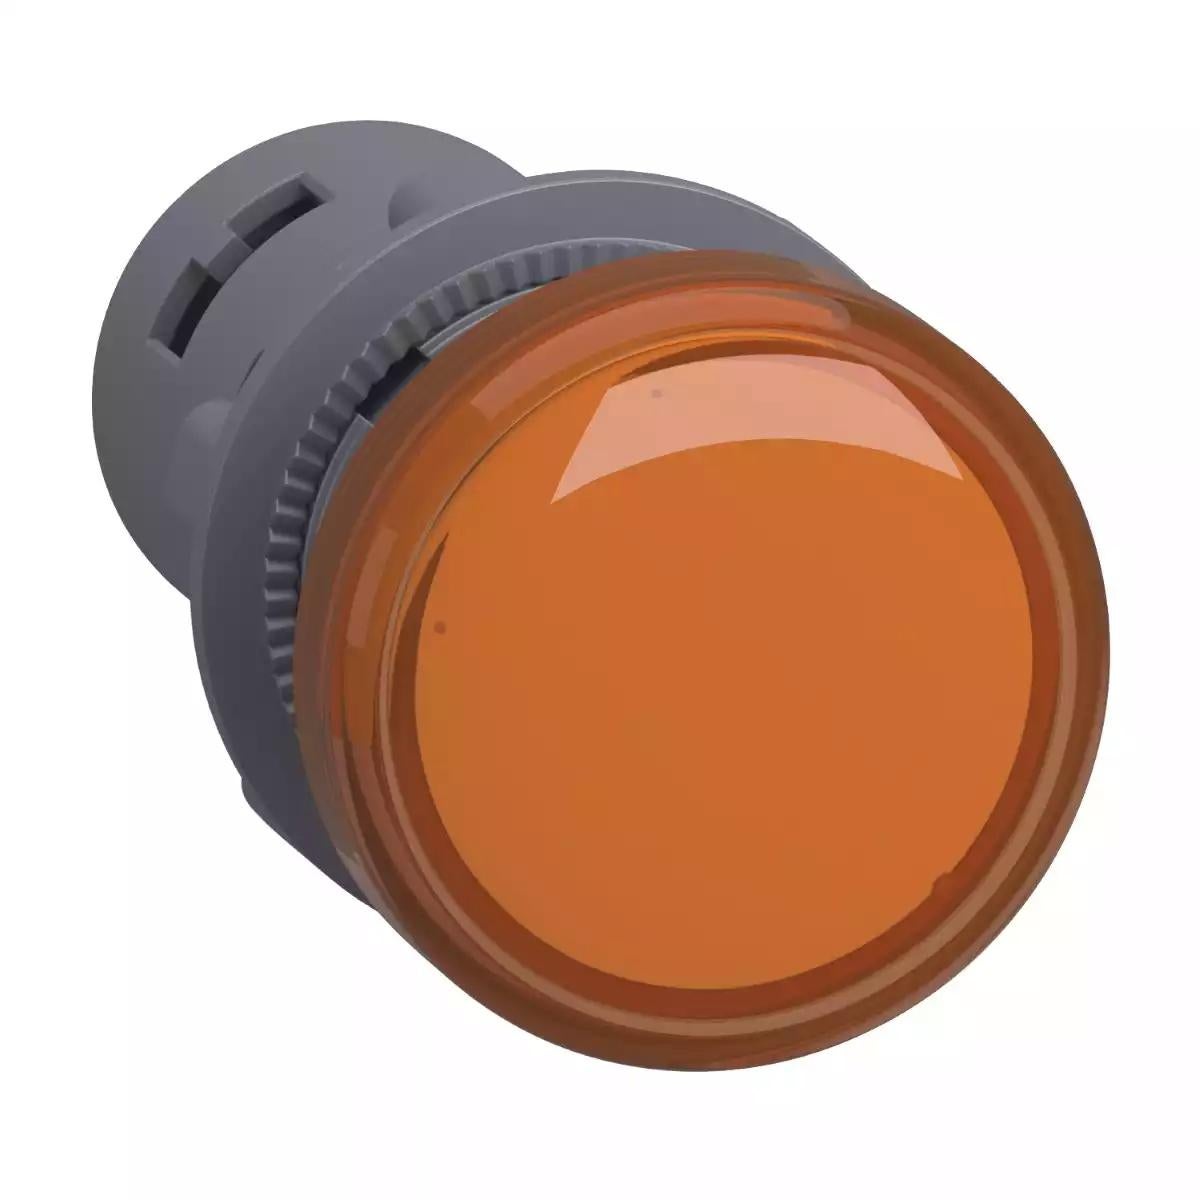 Schneider Electric Harmony Easy XA2E round pilot light Ã˜ 22 - orange - integral LED - 220 V AC- screw clamp terminals